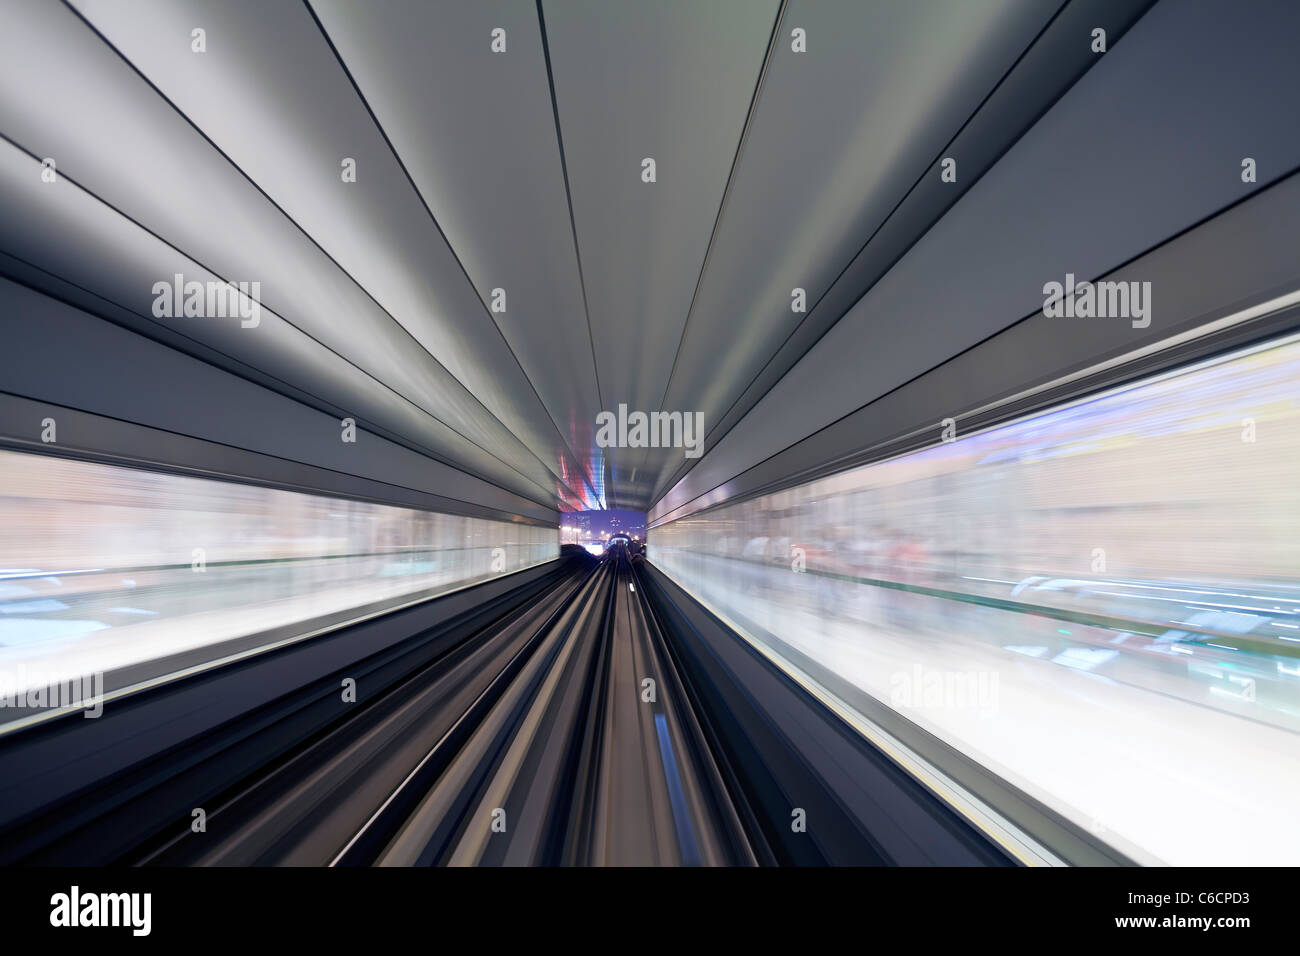 Ouvert en 2010, le métro de Dubaï, MRT, en mouvement approche d'une station, Dubaï, Emirats Arabes Unis Banque D'Images